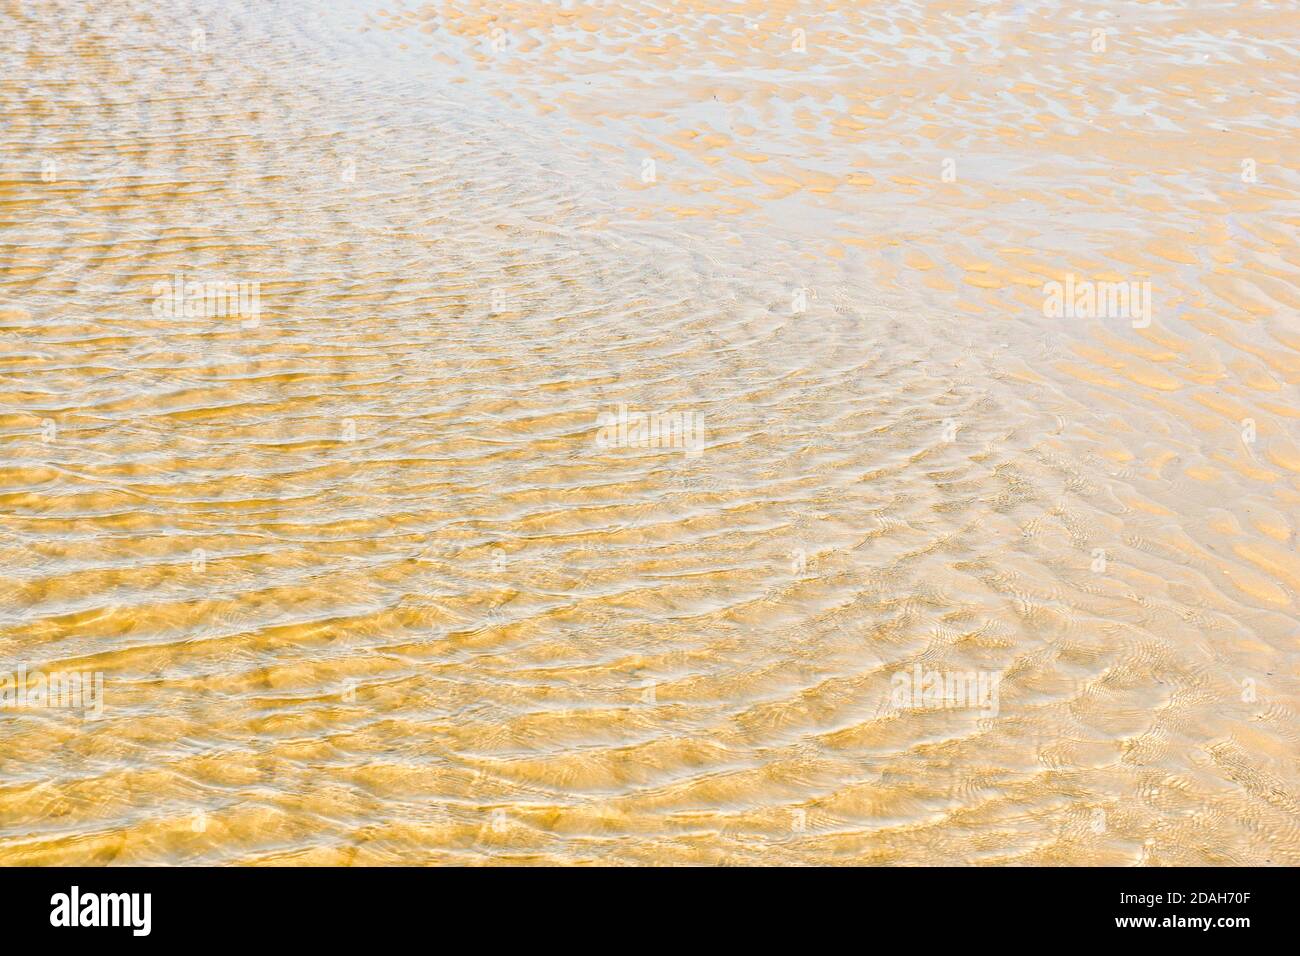 Geriffeltes flaches Wasser mit goldenem Sand. Stockfoto